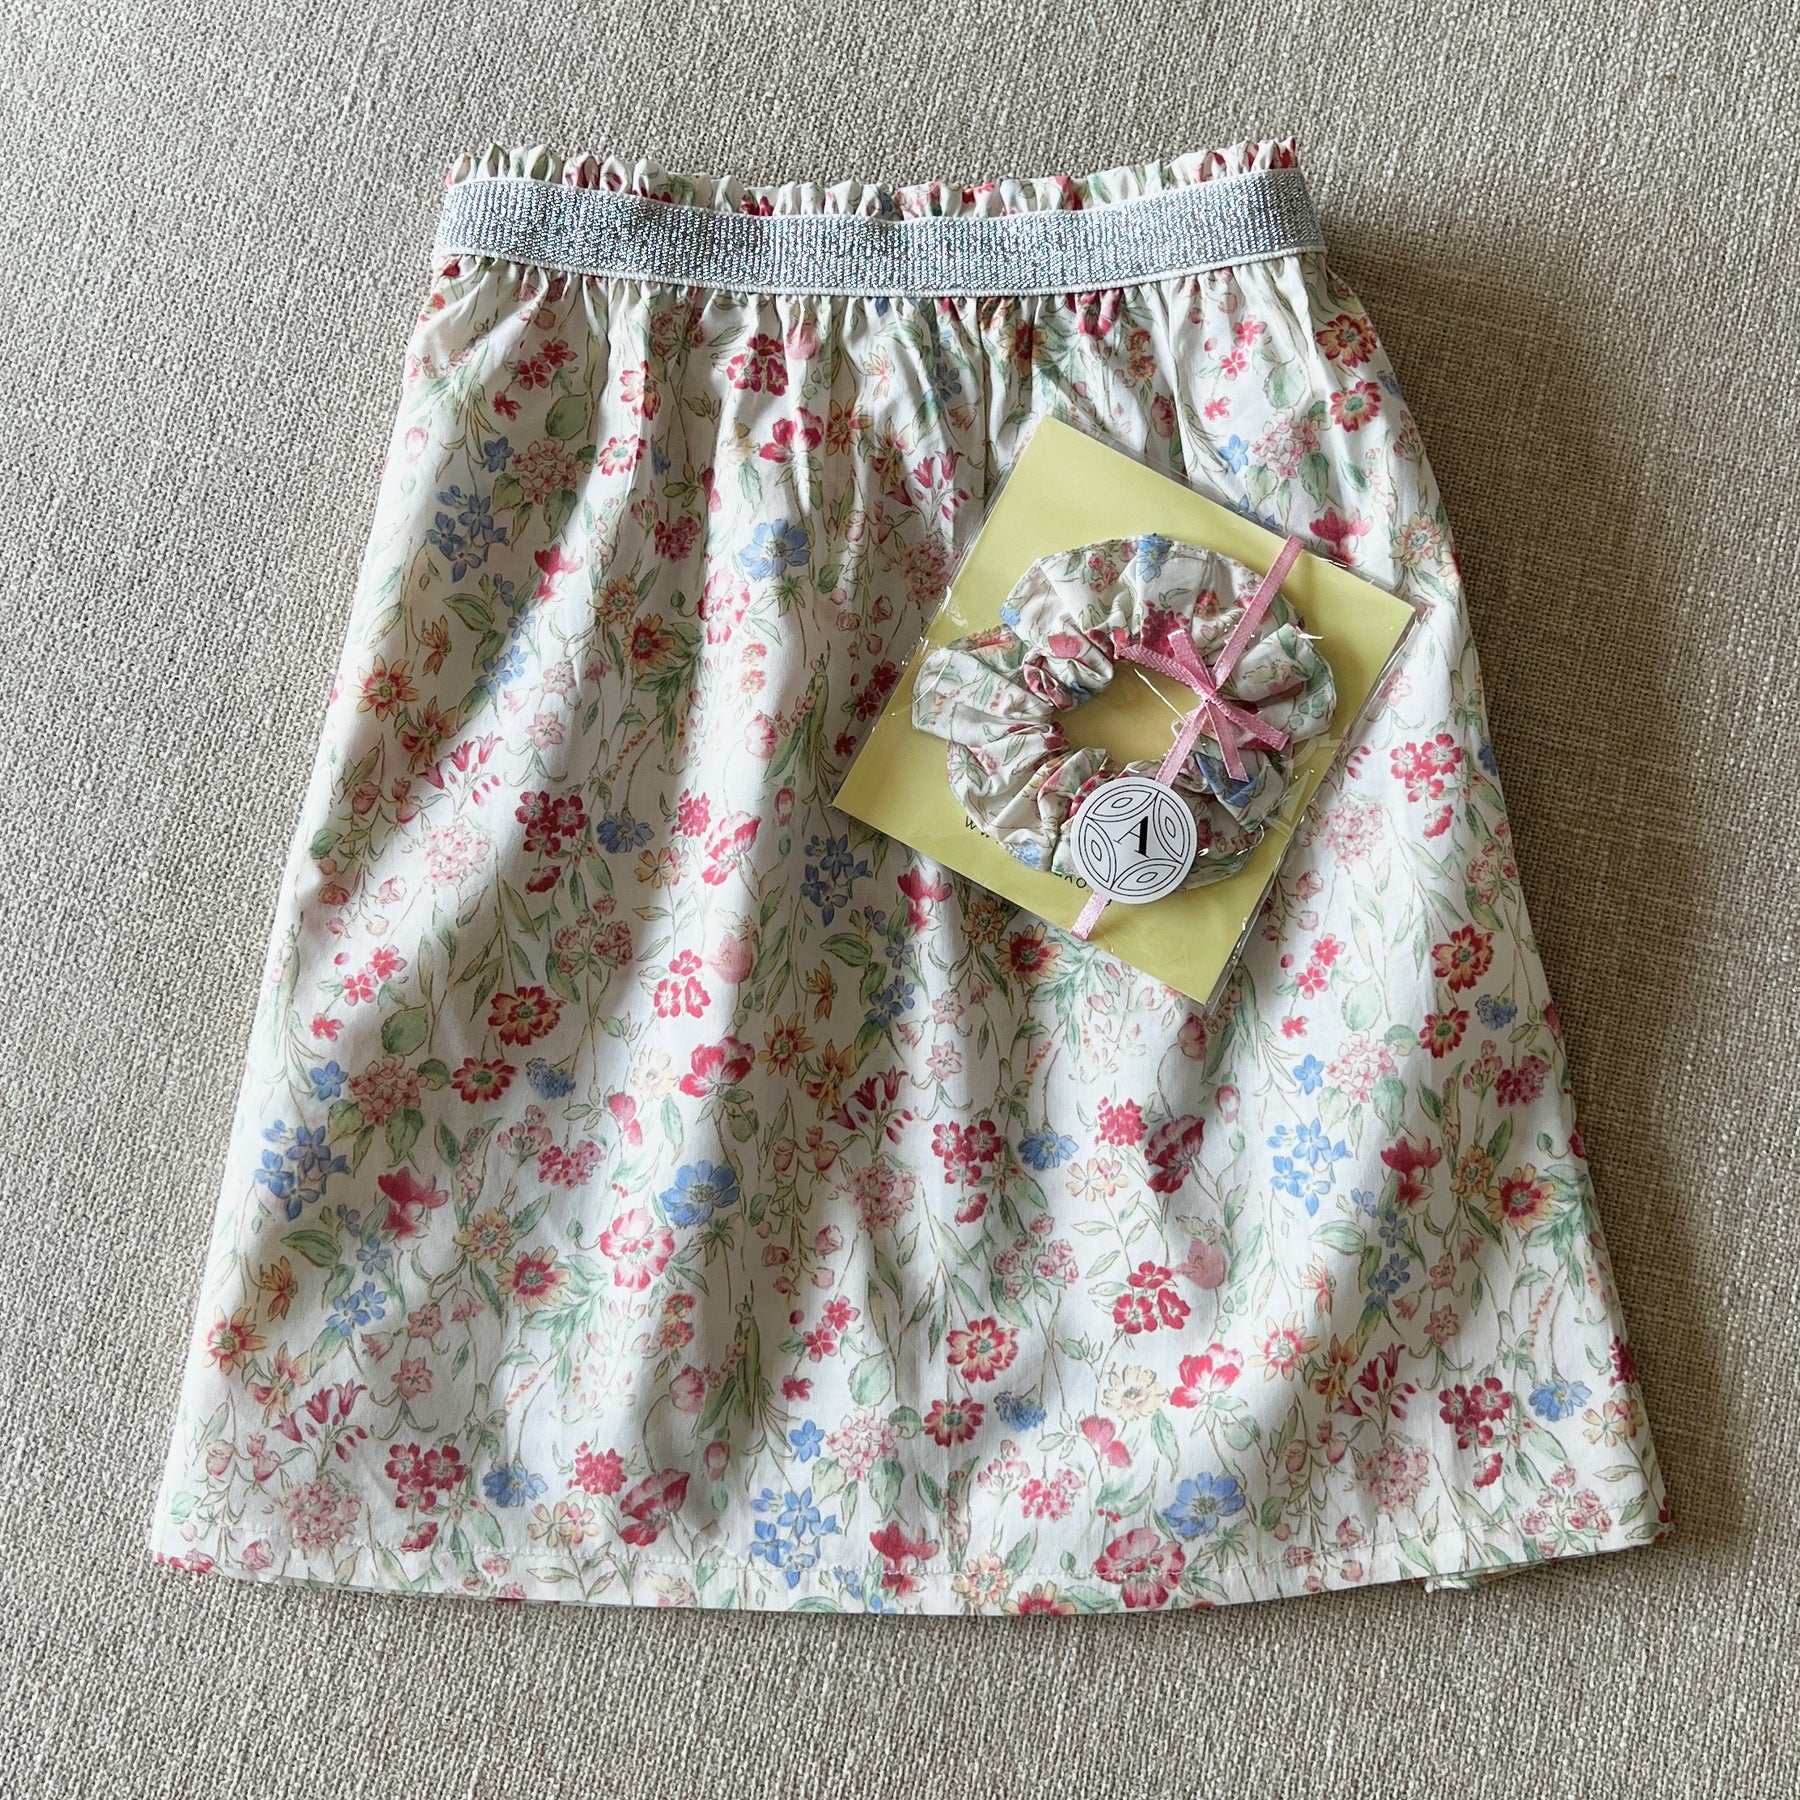 Little Girl's Skirt & Scrunchy Set